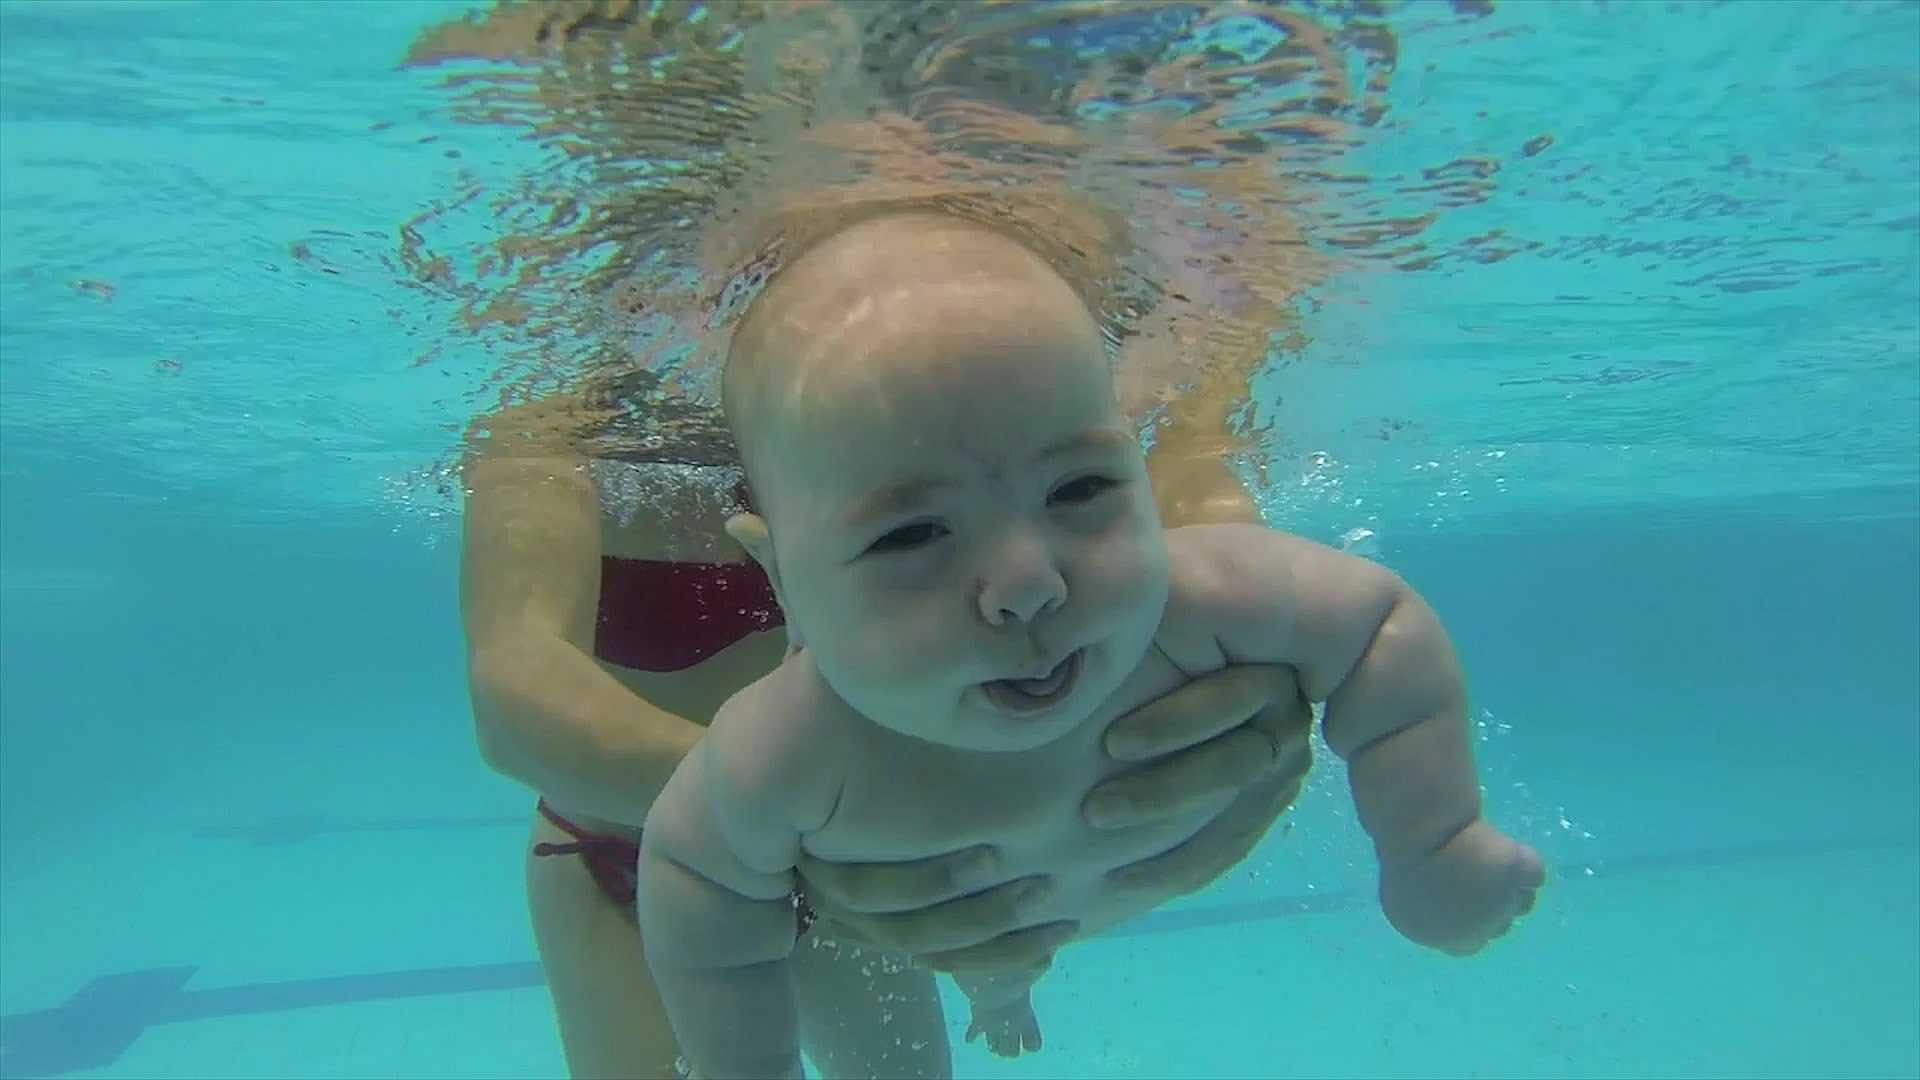 Как купать новорожденного | уроки для мам